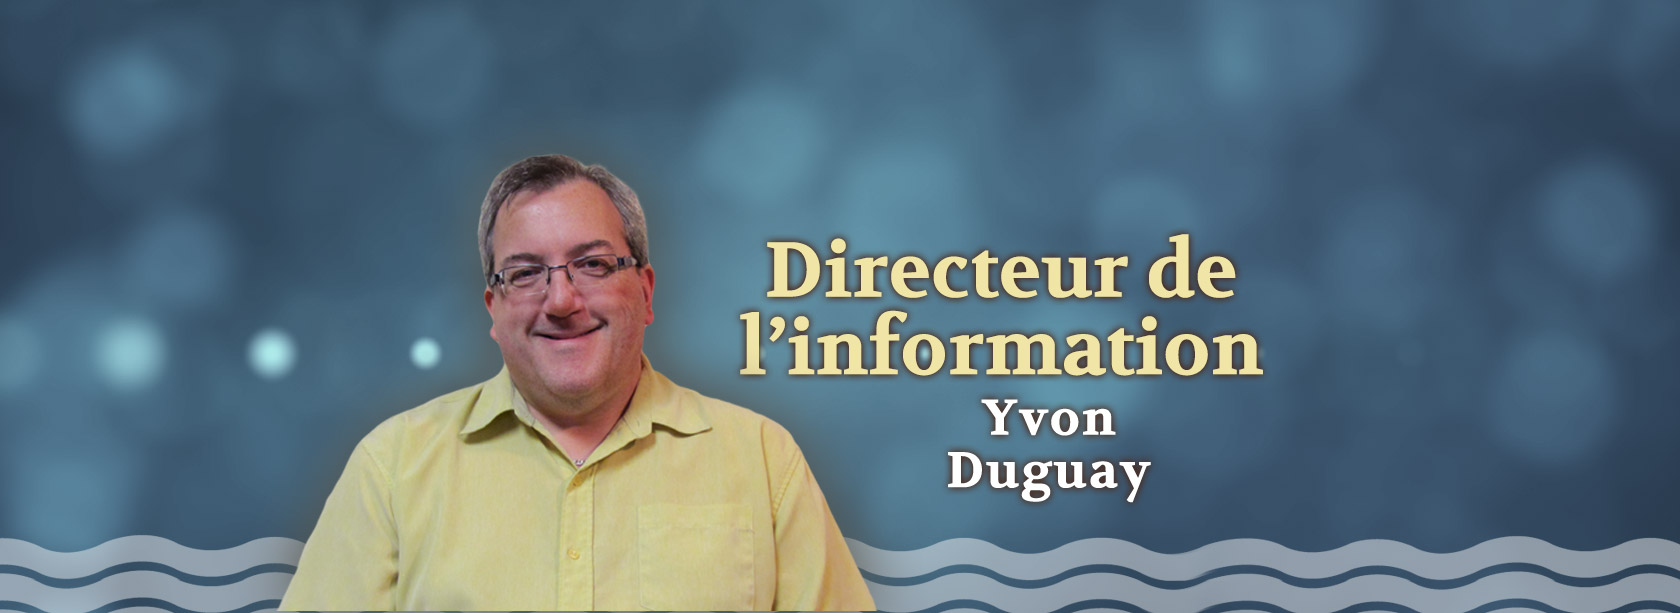 Directeur de l’information Yvon Duguay